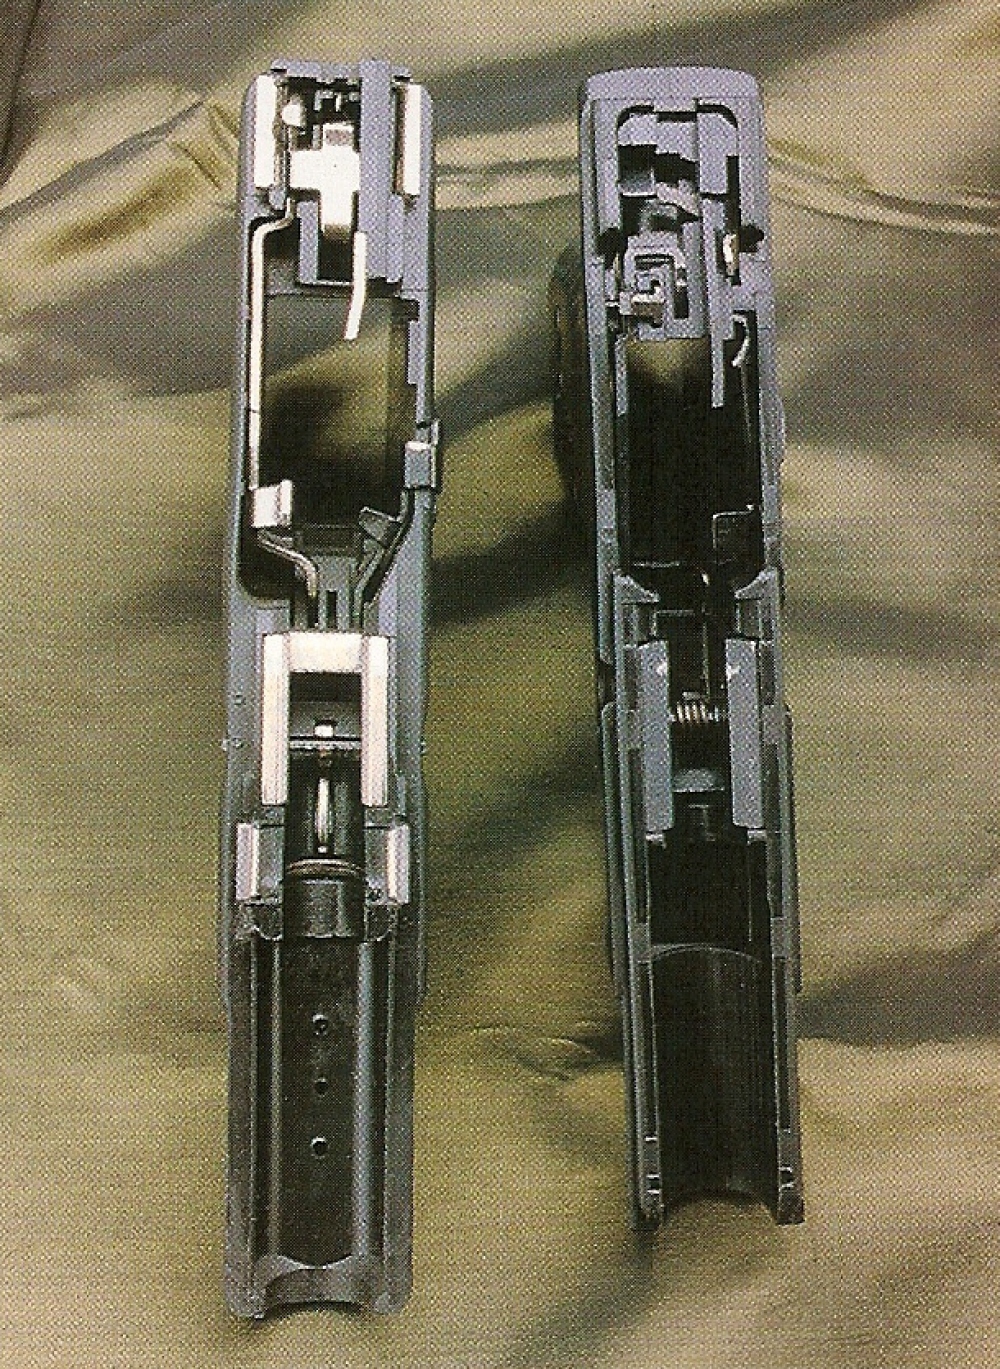 Cette comparaison entre la carcasse du Glock 19 (à gauche) et celle du CZ 100 laissent apparaître des analogies, mais on remarque que les rails du CZ sont totalement dépourvus d'inserts métalliques.